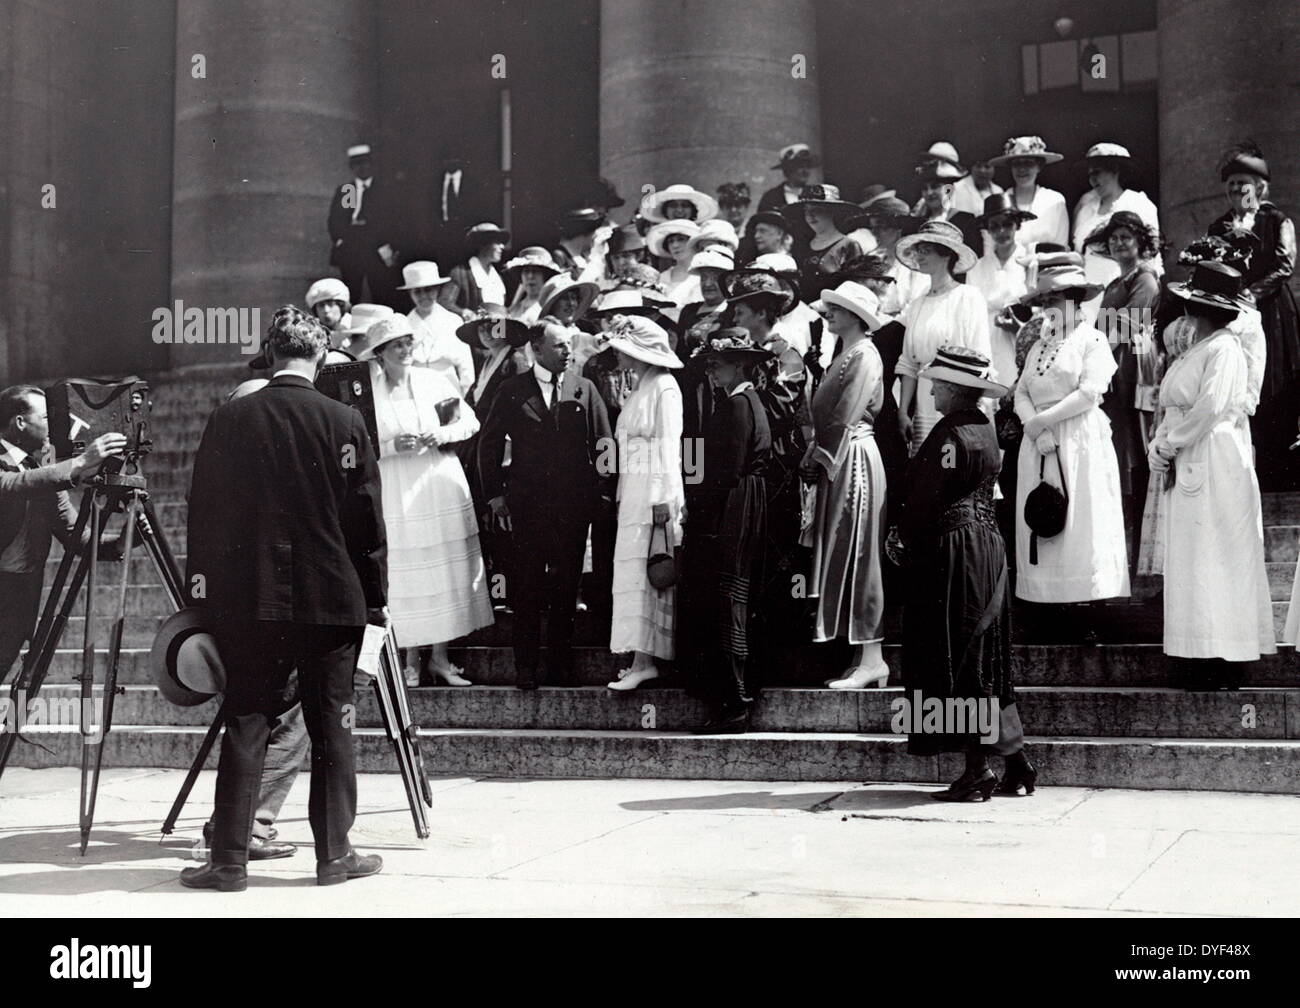 Foto: Mitglieder der Partei der Nationalen Frau und Alice Paul versammelt mit Regler Cox auf Schritte zu einem Gebäude, mit Fotografen und Kameras auf Stativen im Vordergrund. 1920. Stockfoto